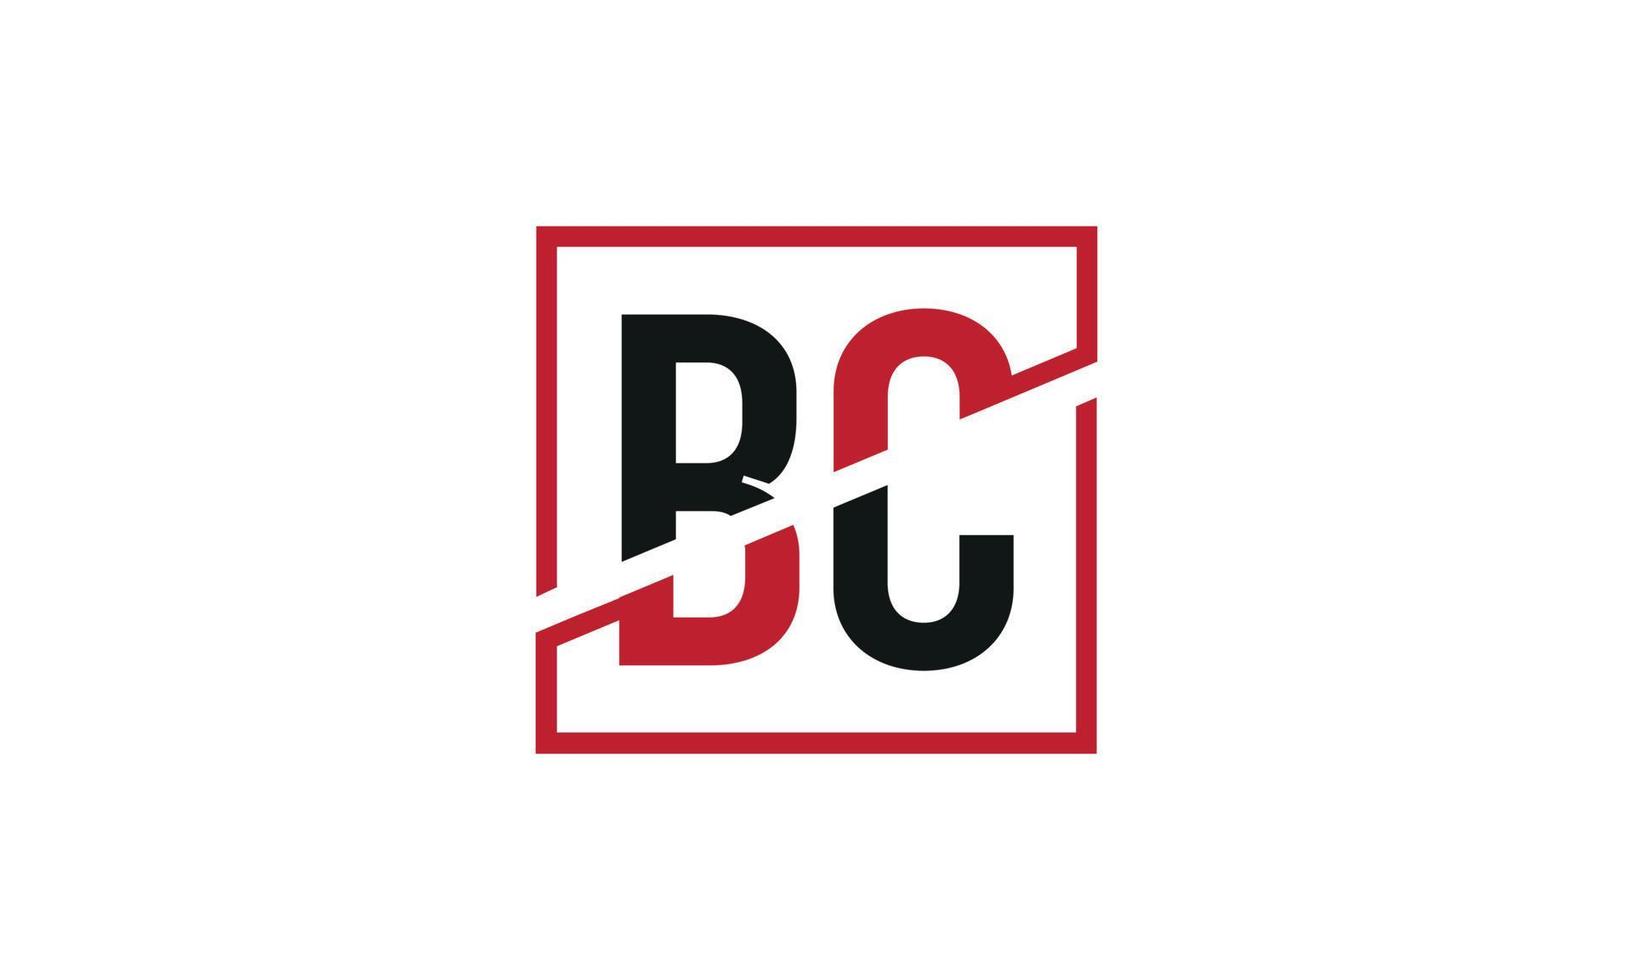 lettre bc logo pro fichier vectoriel vecteur pro